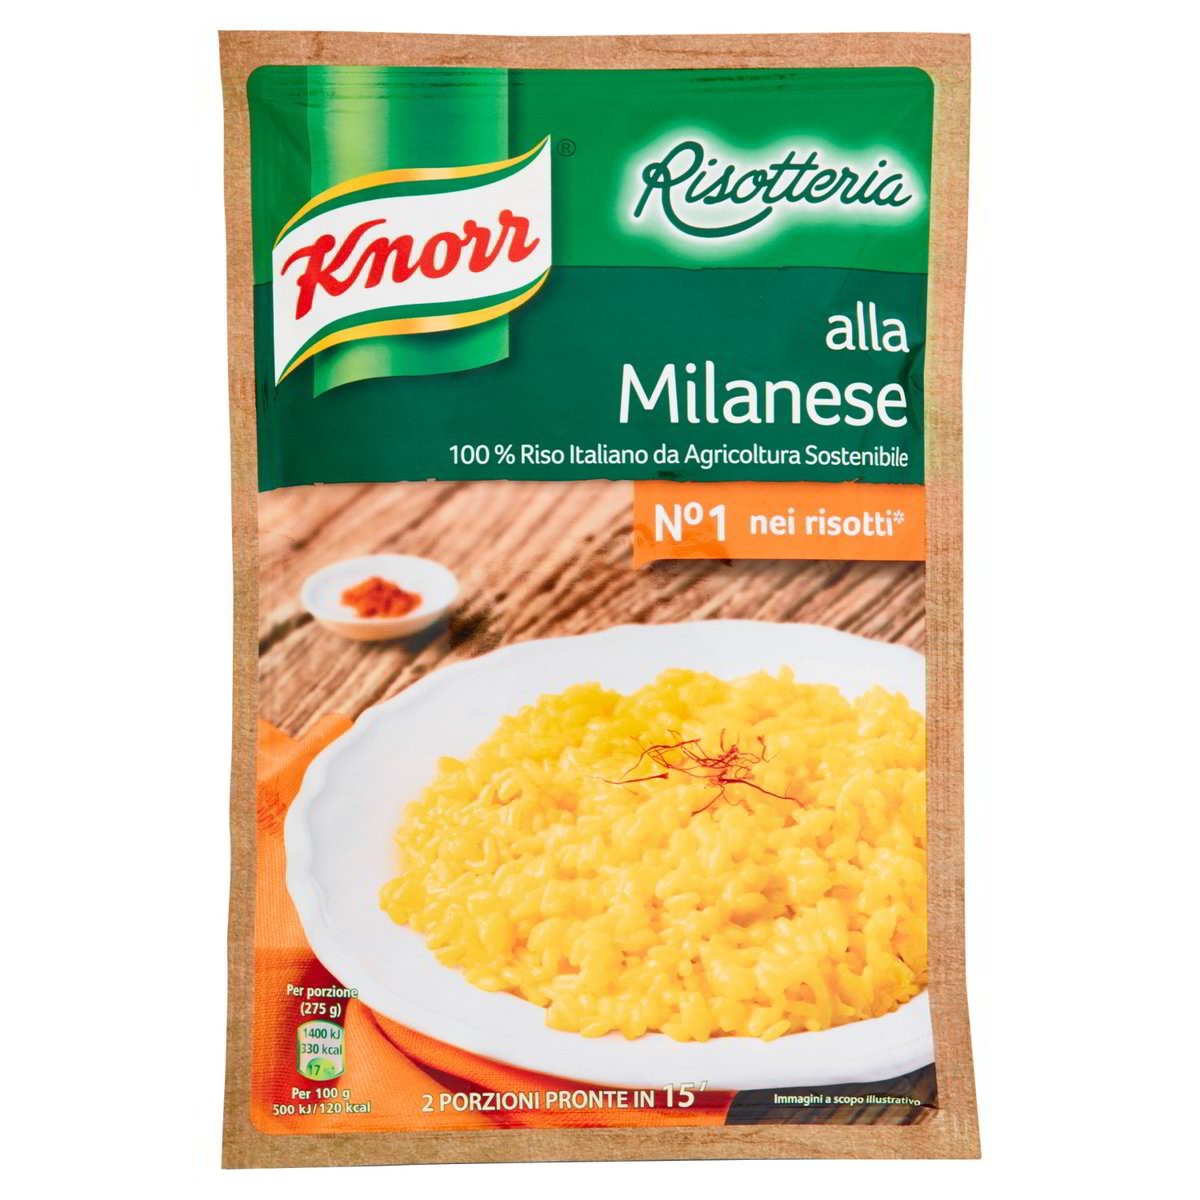 Knorr Risotto alla milanese Risotteria